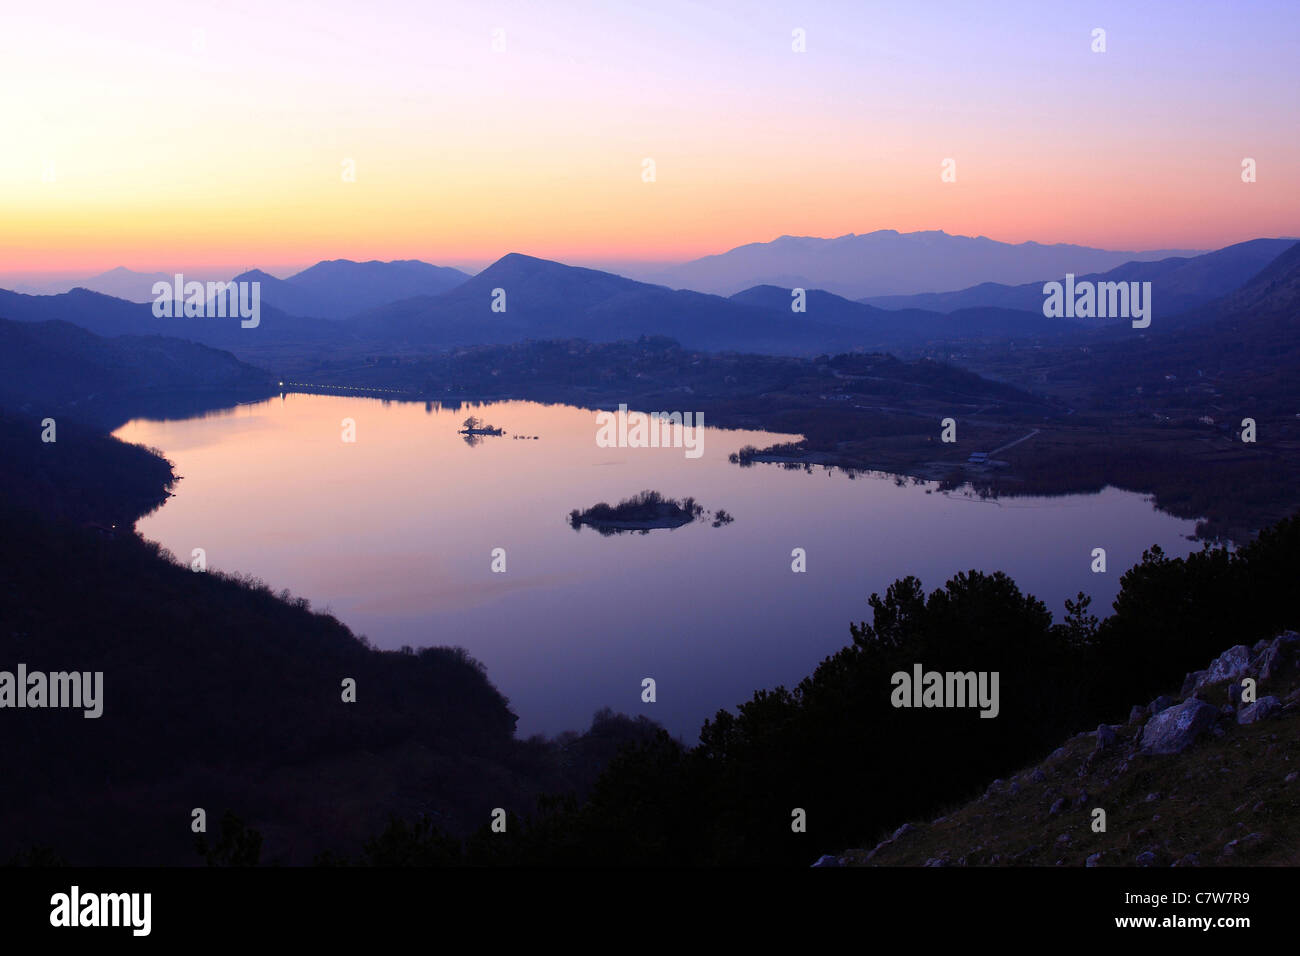 Italy, Campania, Matese regional par, Gallo lake at dusk Stock Photo